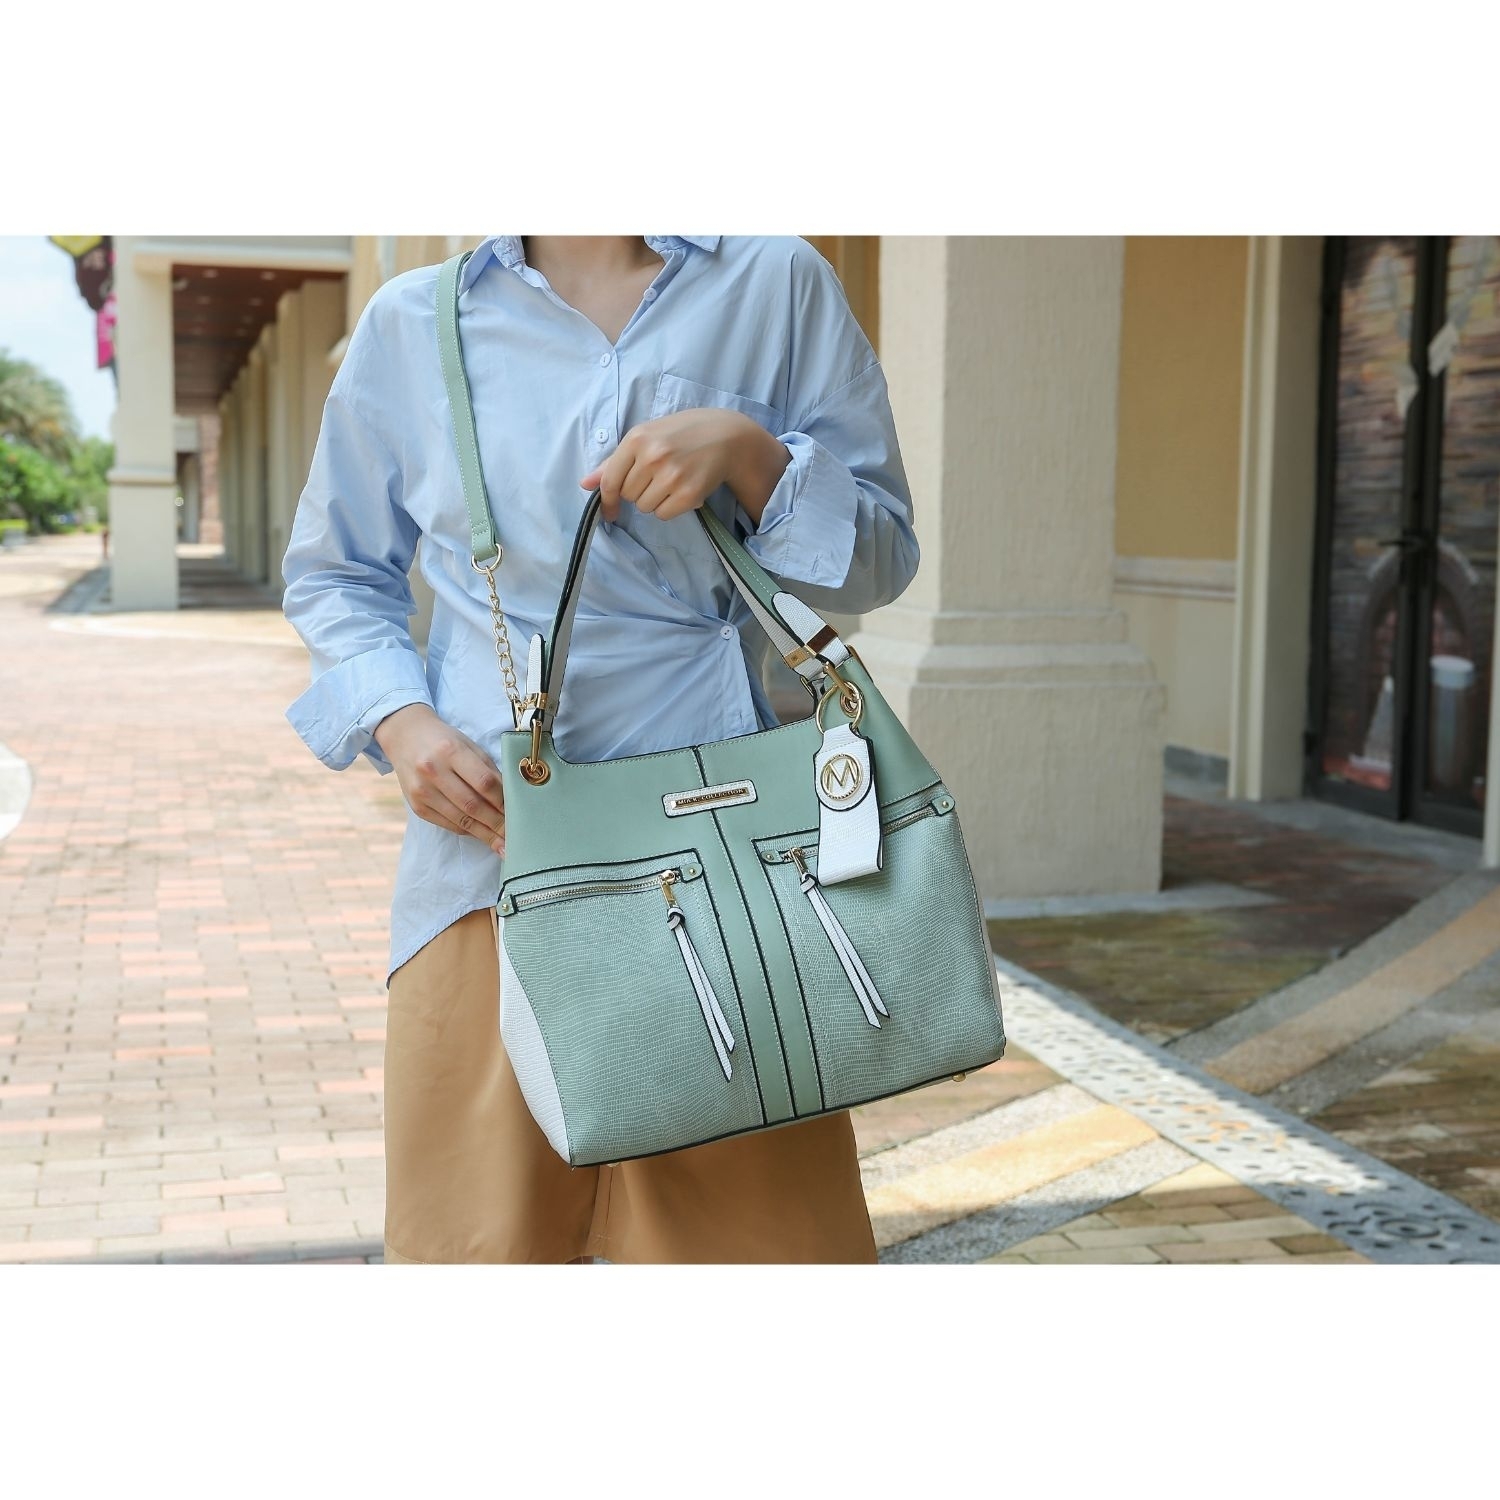 MKF Collection Sofia Tote 2 Pcs Handbag With Keyring By Mia K. - Navy